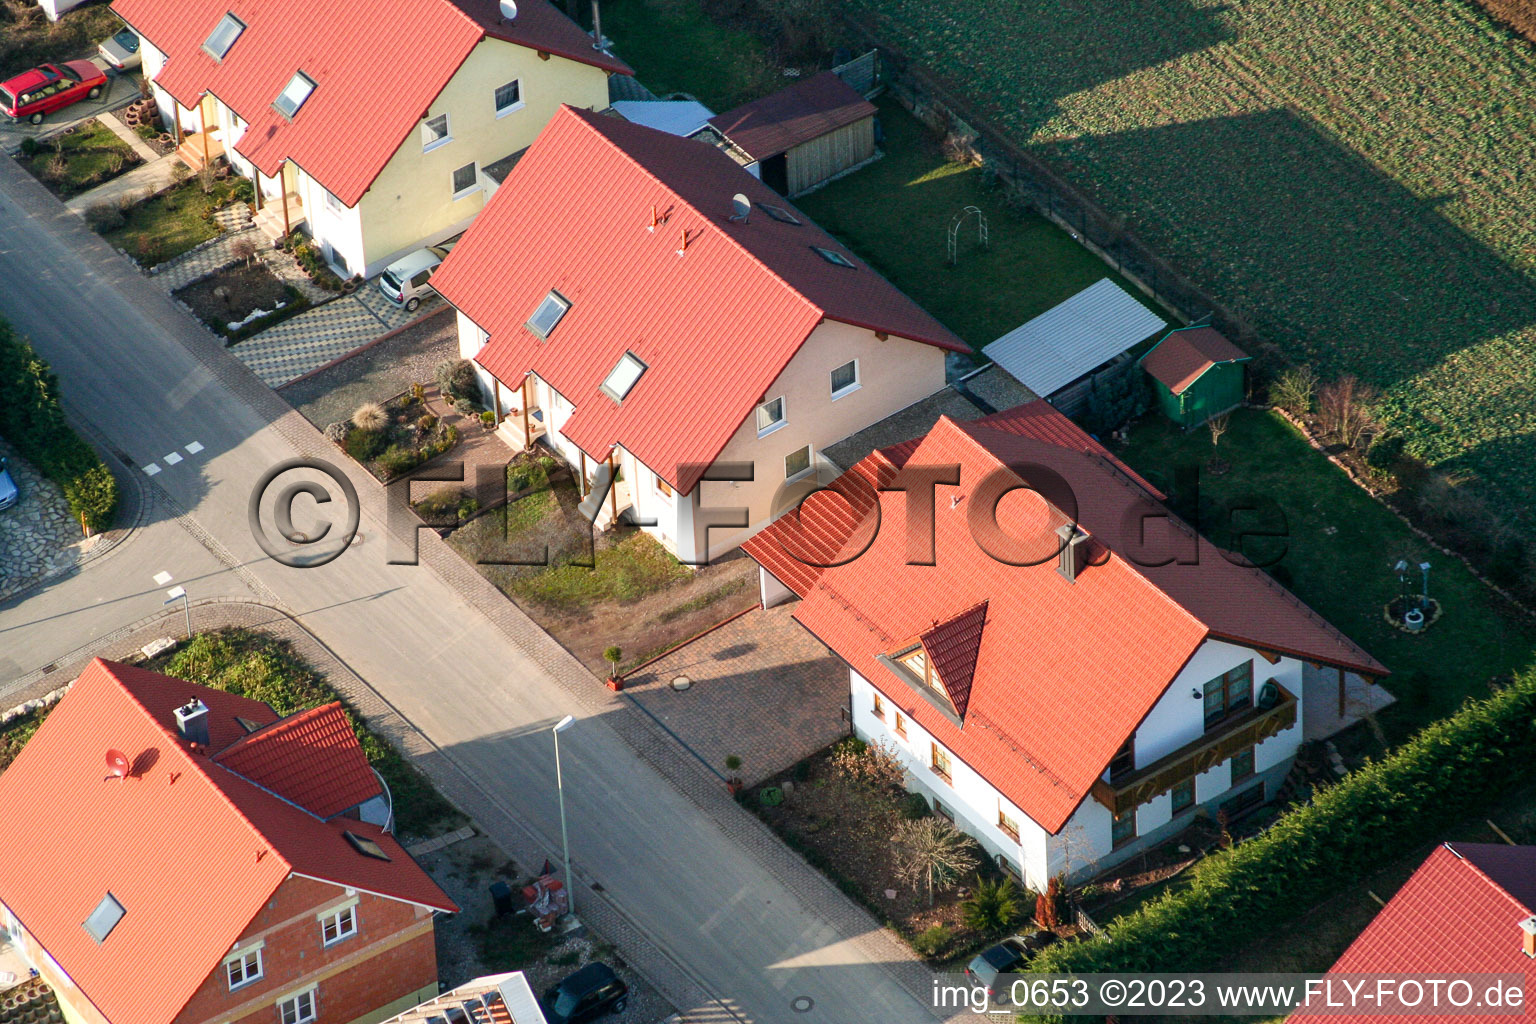 Dierbach Neubaugebiet im Bundesland Rheinland-Pfalz, Deutschland von oben gesehen